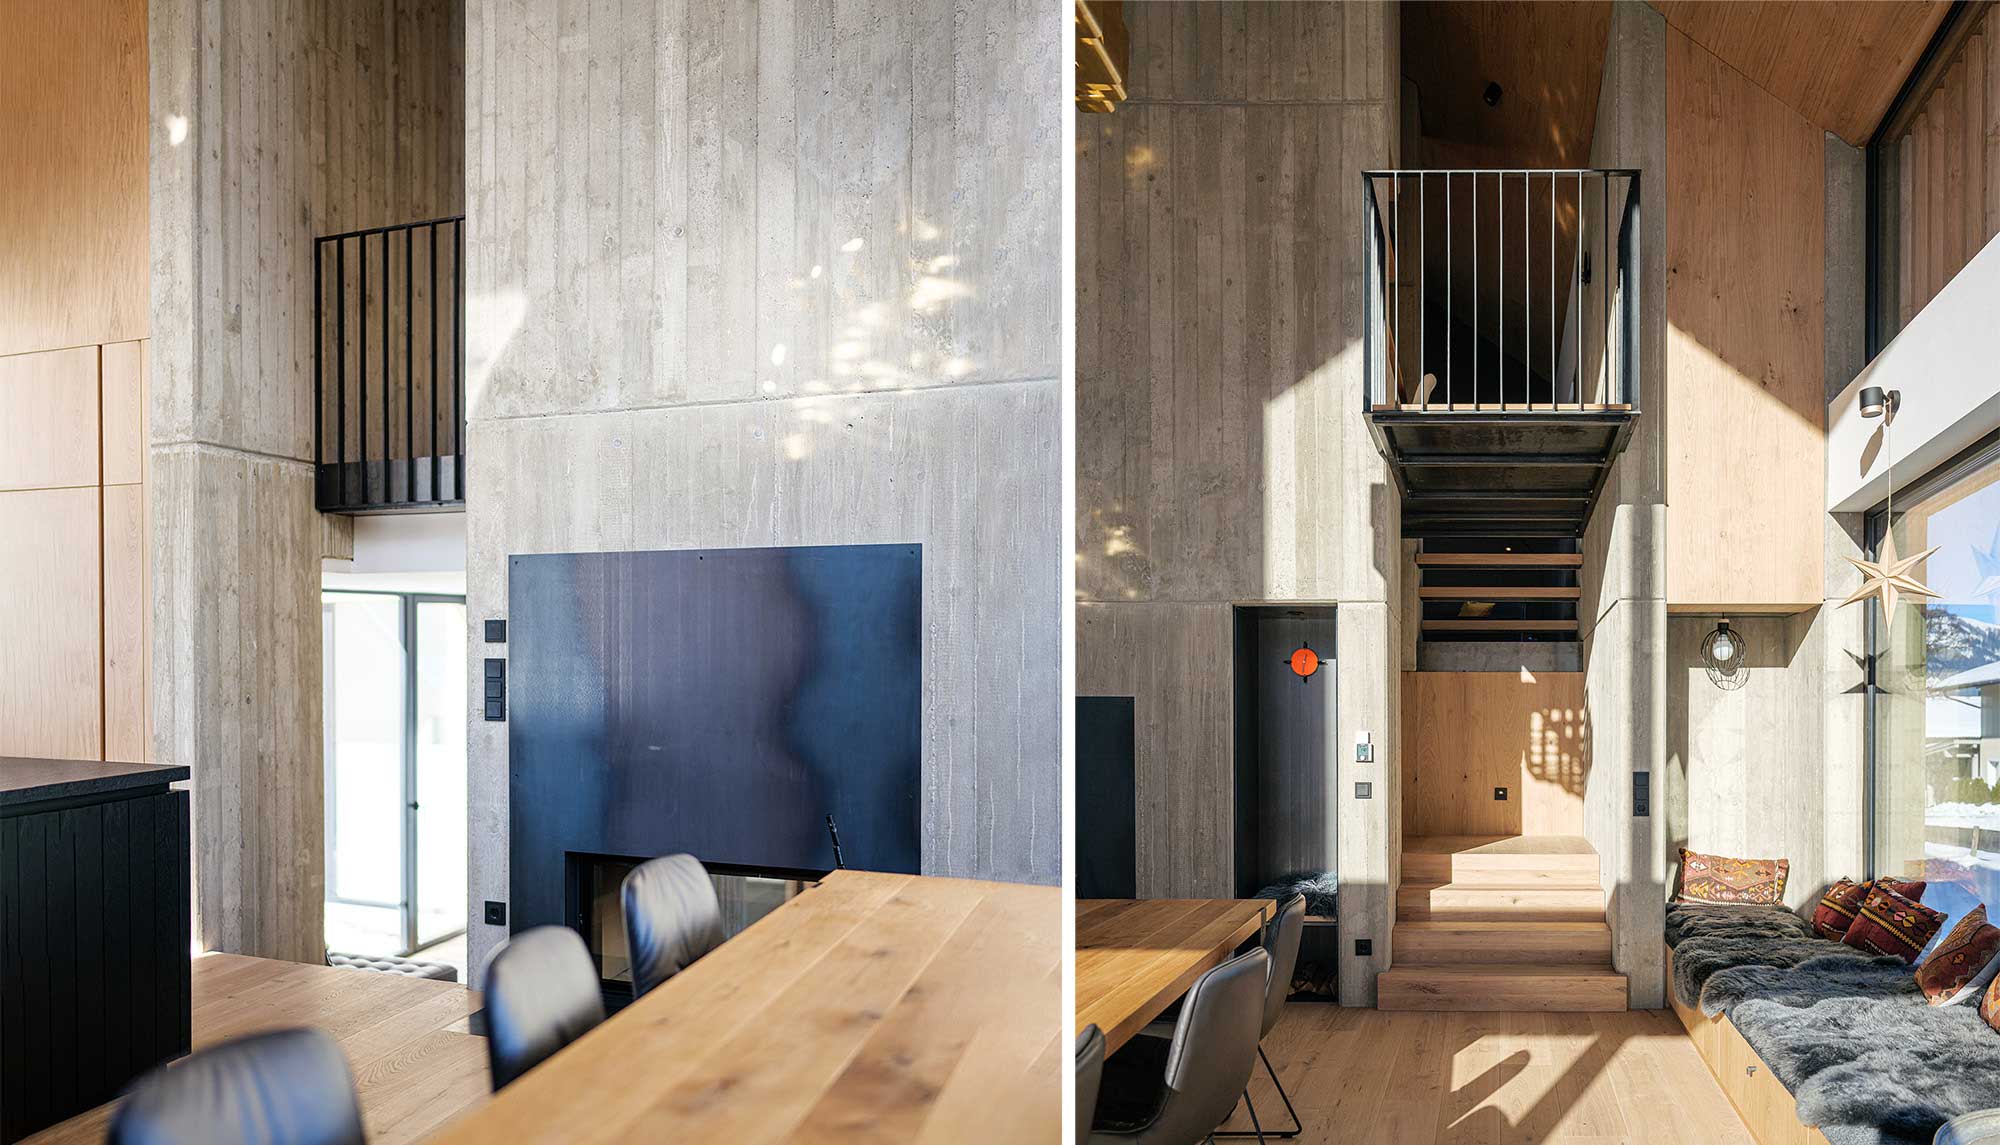 Sichtbeton im Innenraumdesign | Moderne Bauweise | Kombination aus Holz und Beton | Architekturprojekt in Kitzbühel, Tirol